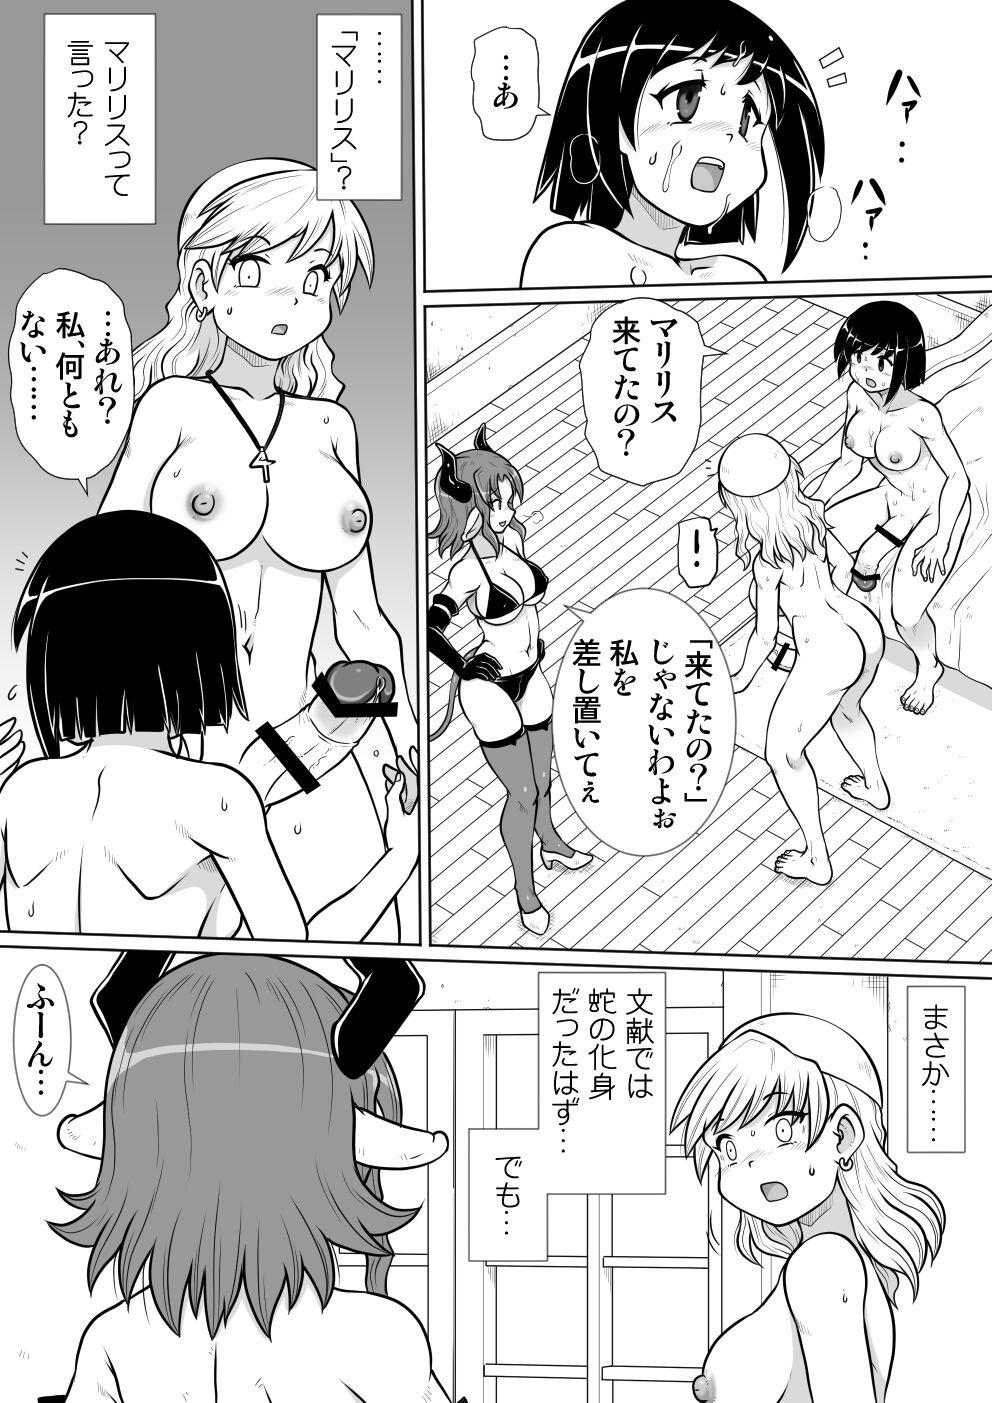 Plumper Ma no Akumabarai 3 - Original Hot Naked Girl - Page 10